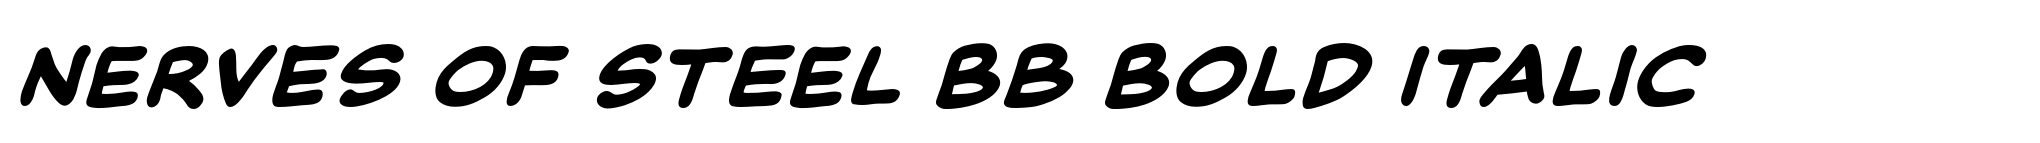 Nerves of Steel BB Bold Italic image